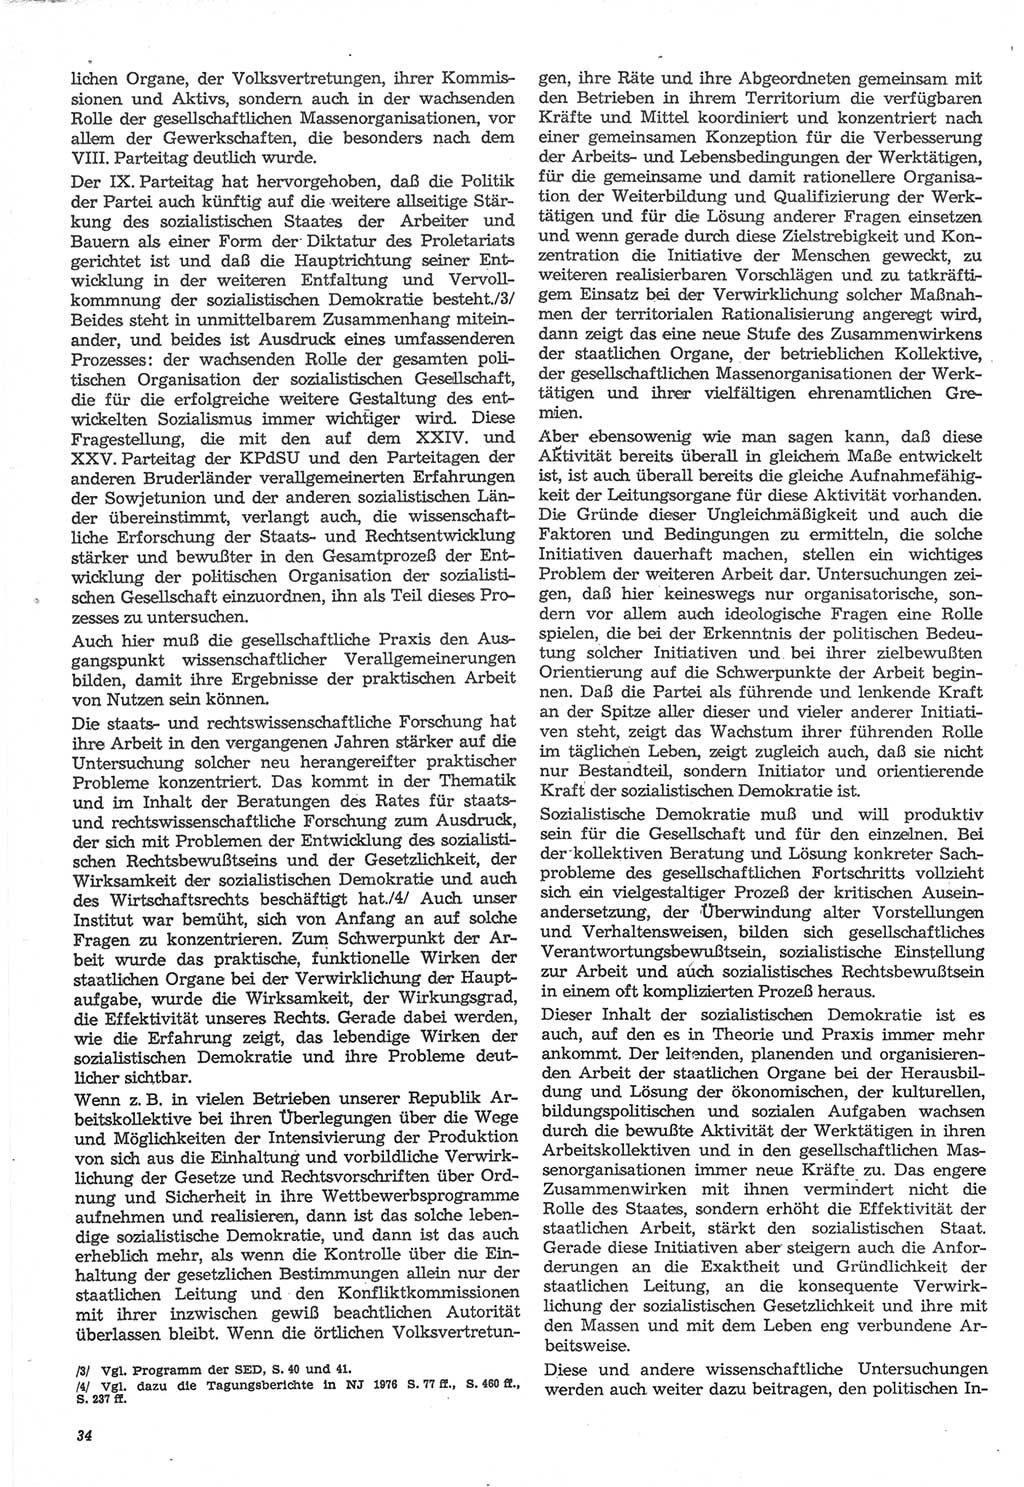 Neue Justiz (NJ), Zeitschrift für Recht und Rechtswissenschaft-Zeitschrift, sozialistisches Recht und Gesetzlichkeit, 31. Jahrgang 1977, Seite 34 (NJ DDR 1977, S. 34)